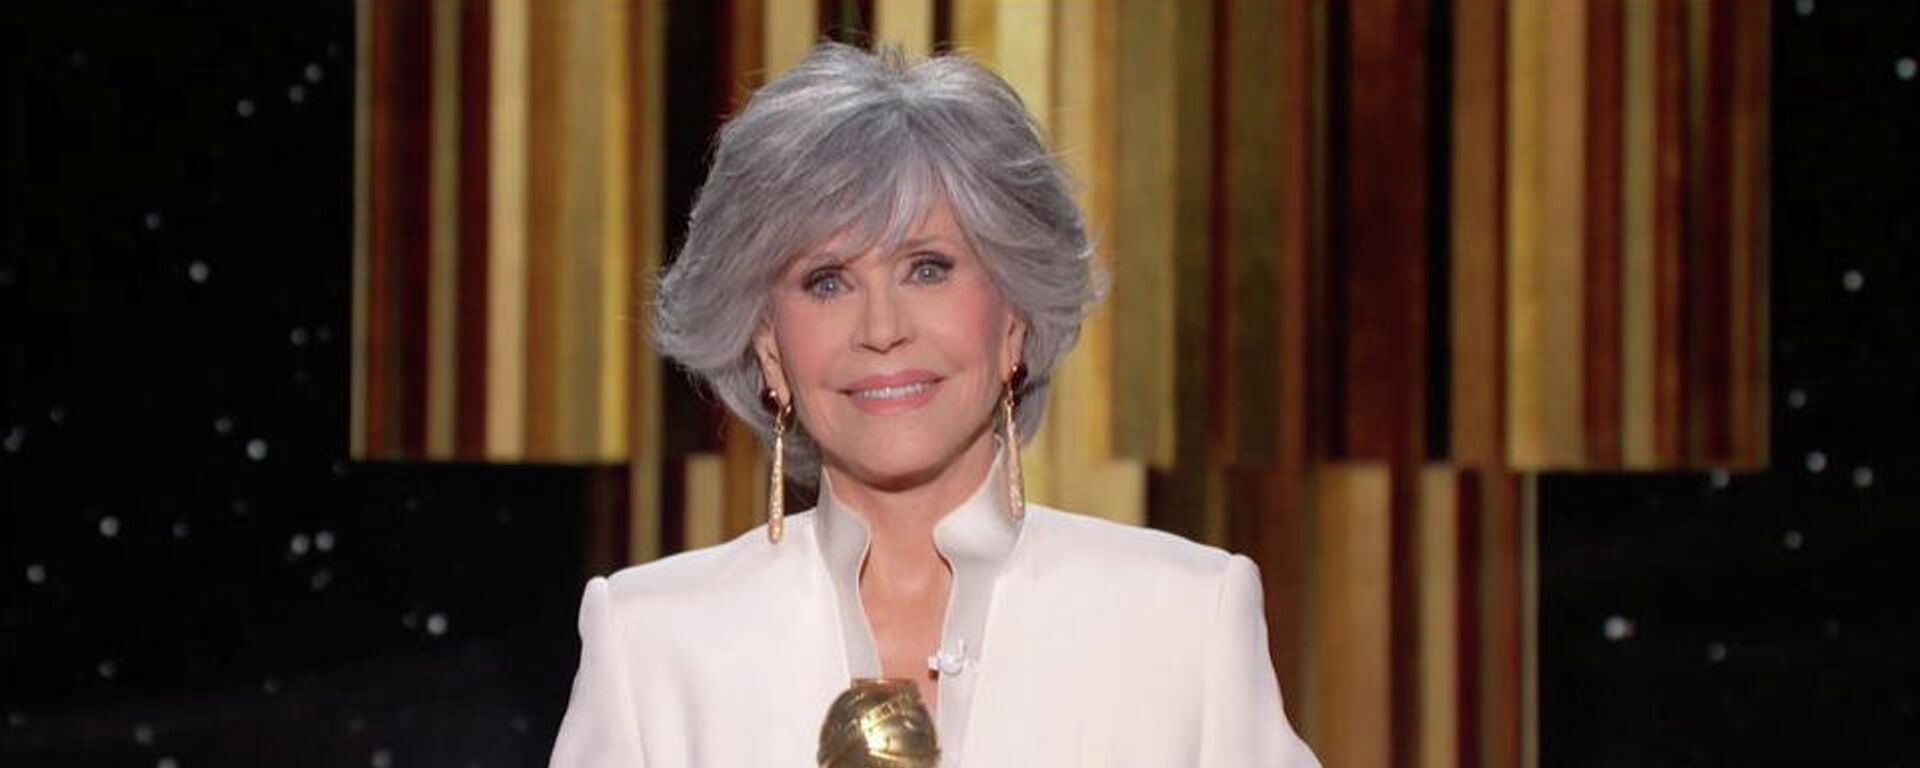 Jane Fonda, actriz estadounidense, recibe el premio  Cecil B. DeMille en la 78 ceremonia de los Globo de Oro - Sputnik Mundo, 1920, 01.03.2021